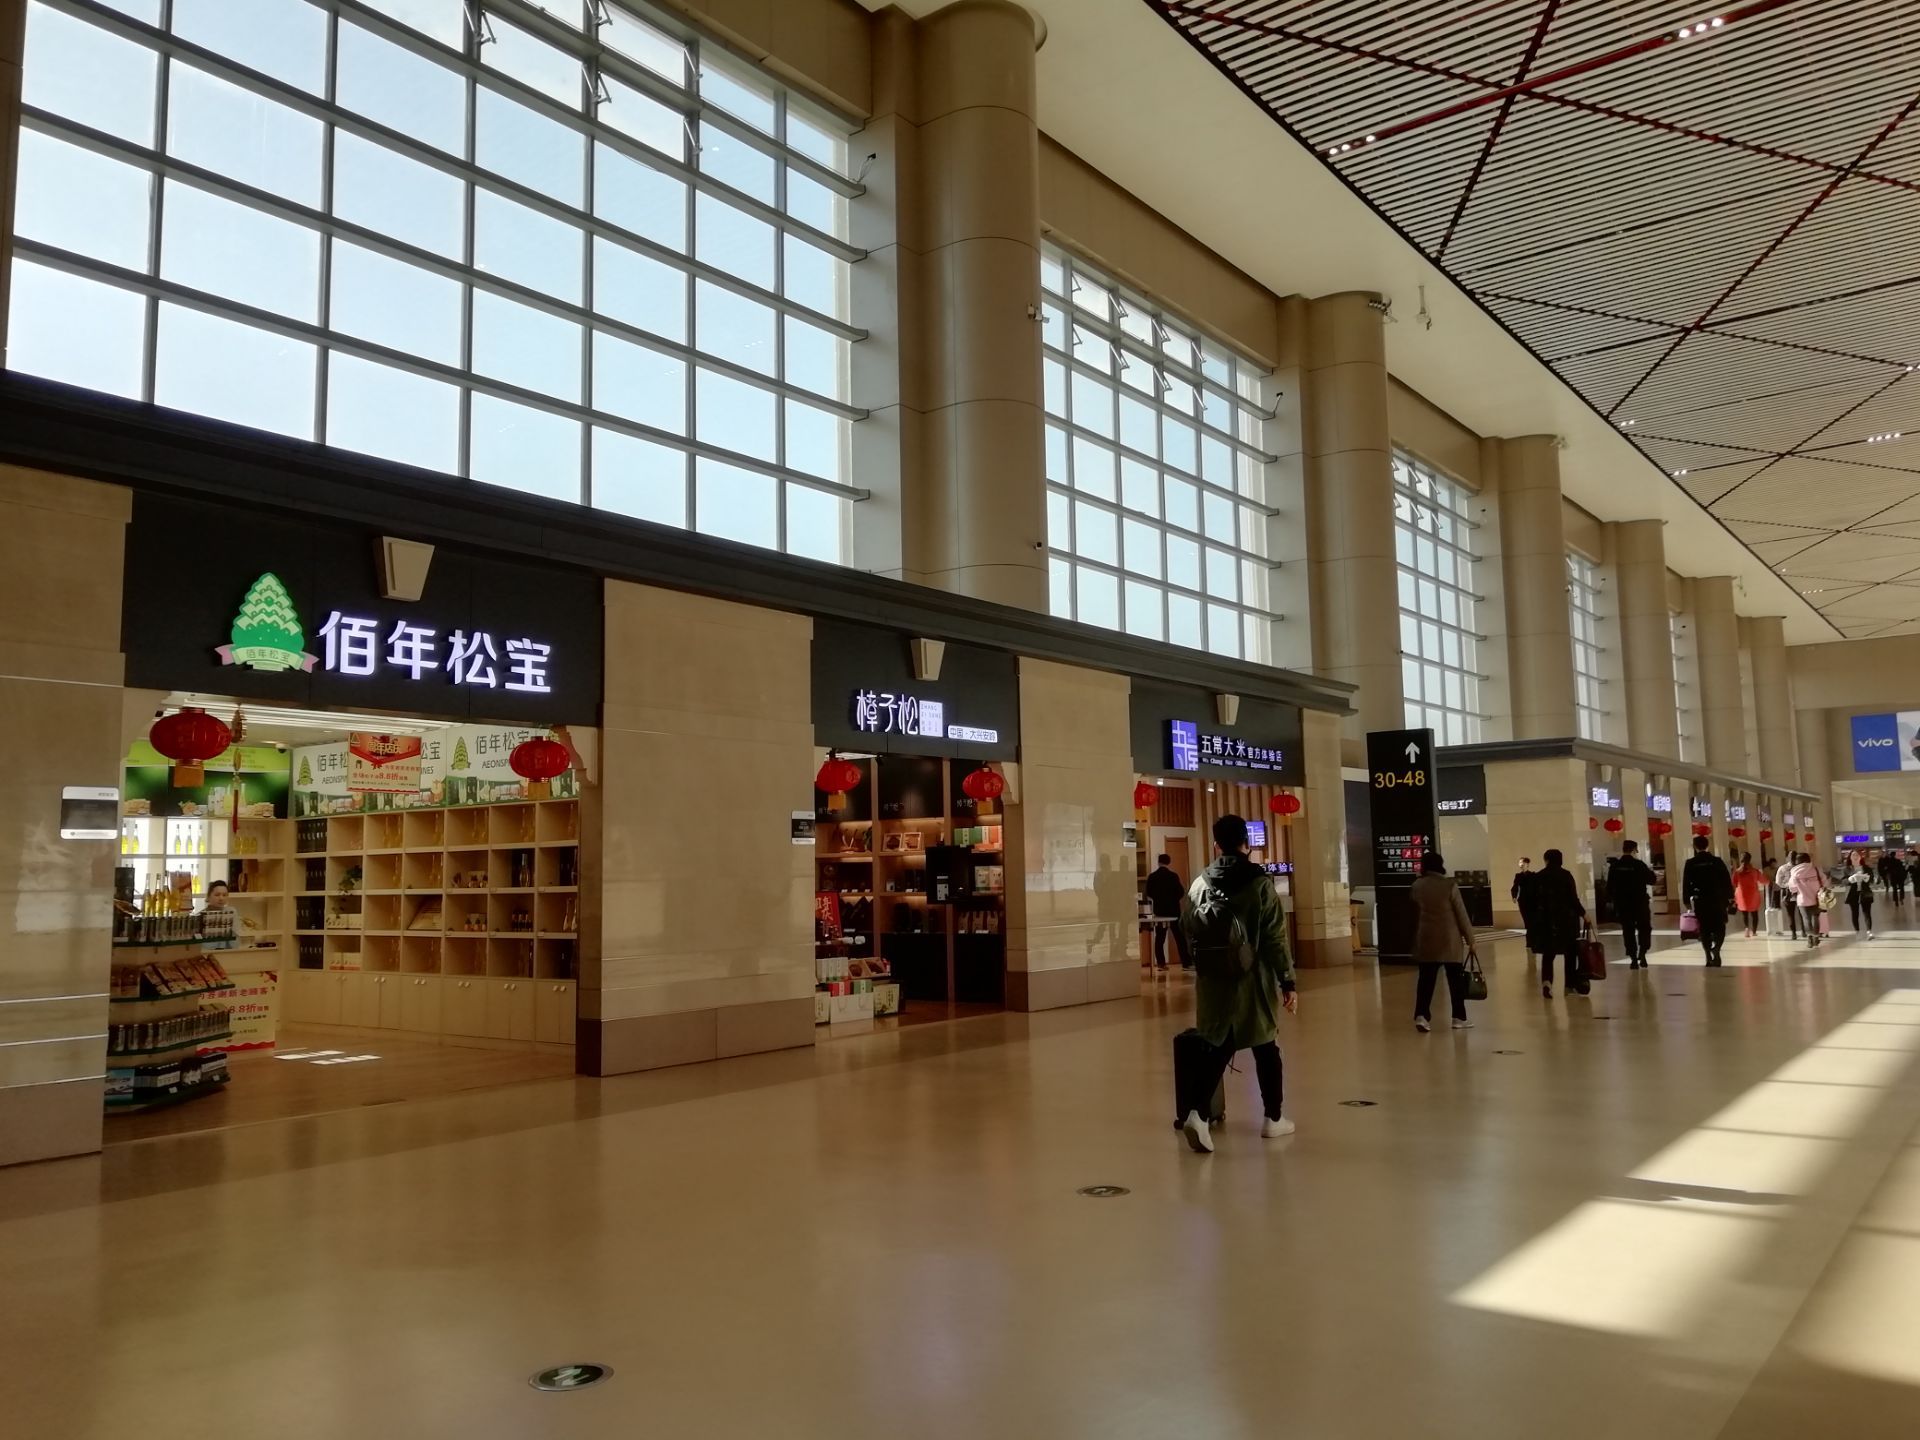 【携程攻略】哈尔滨太平国际机场怎么样/怎么去,哈尔滨太平国际机场用户点评/评价